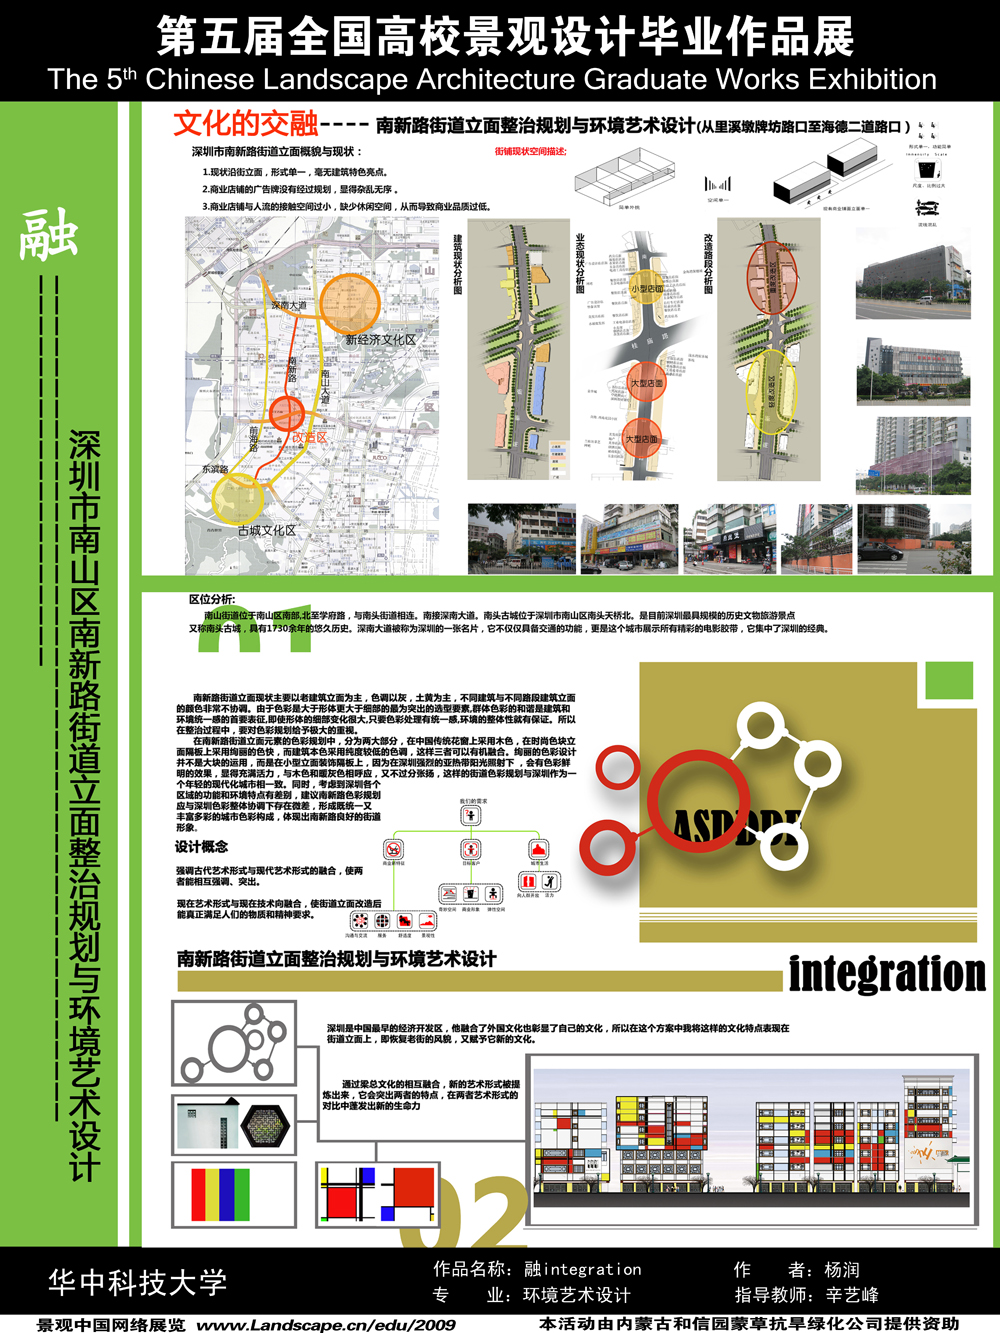 融integration--深圳市南山区南新路街道立面整治规划与环境...-1